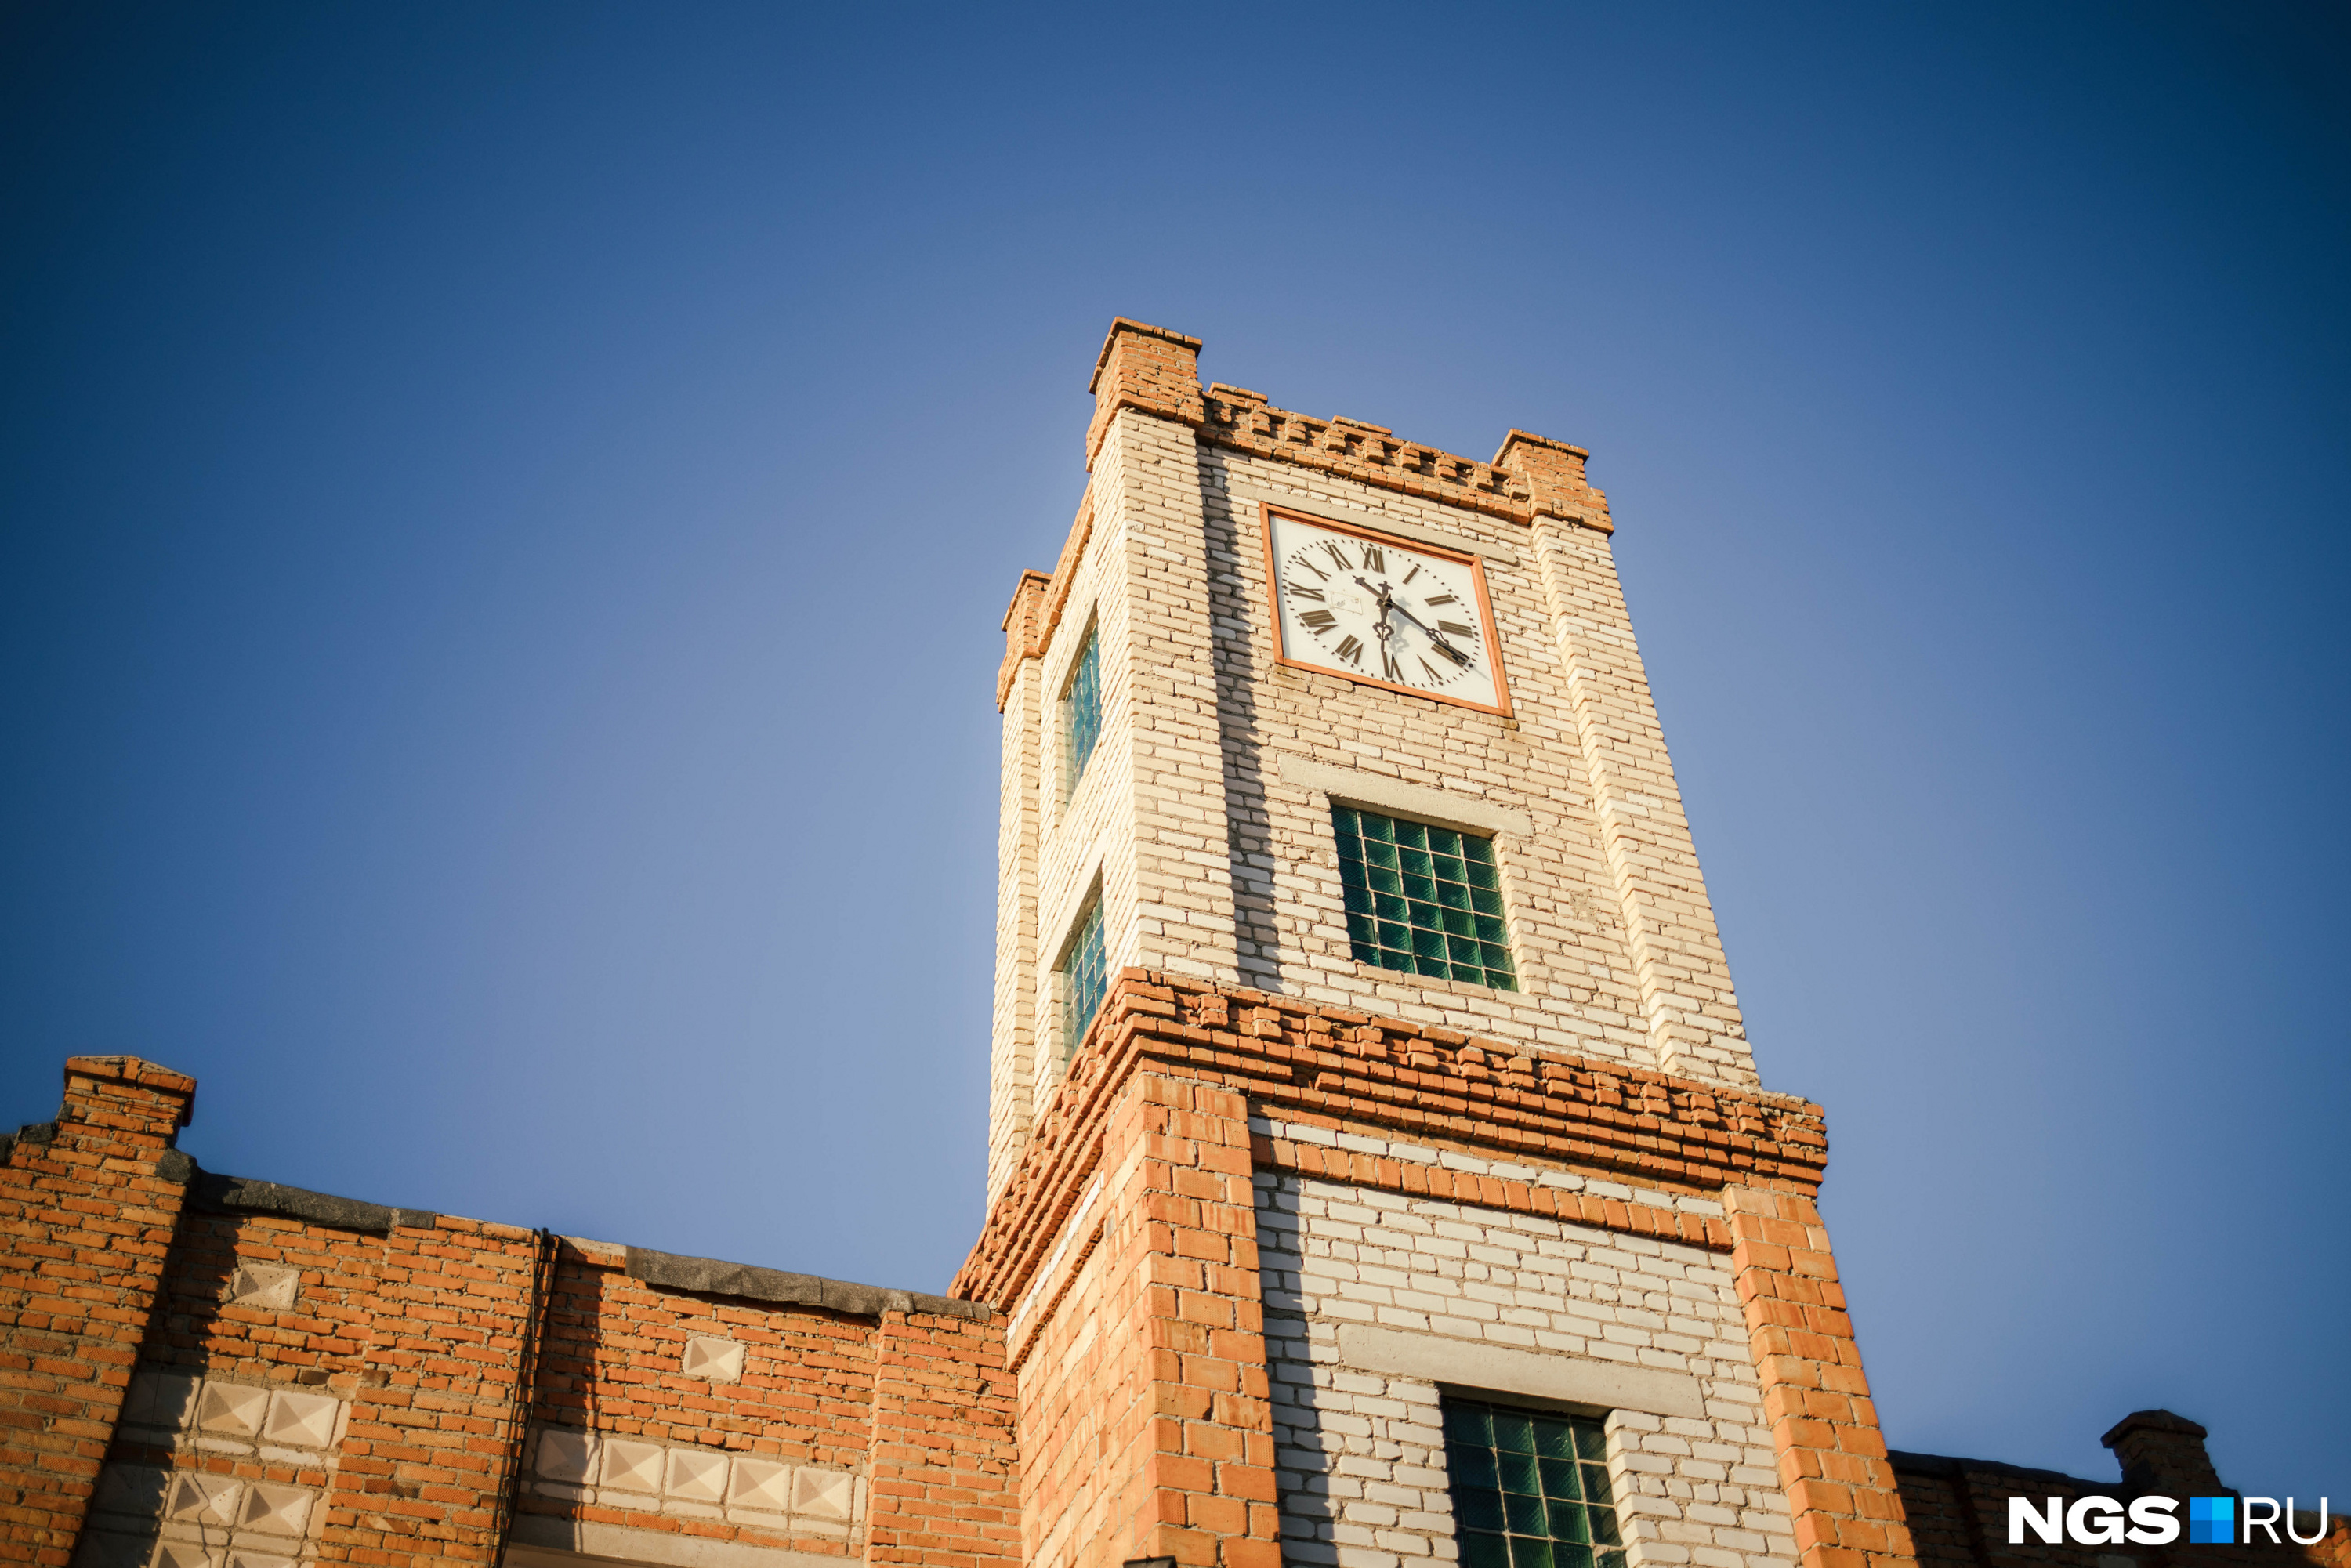 Главная достопримечательность Неудачино — башня с часами, сконструированными местным мастером Абрамом Штеффеном